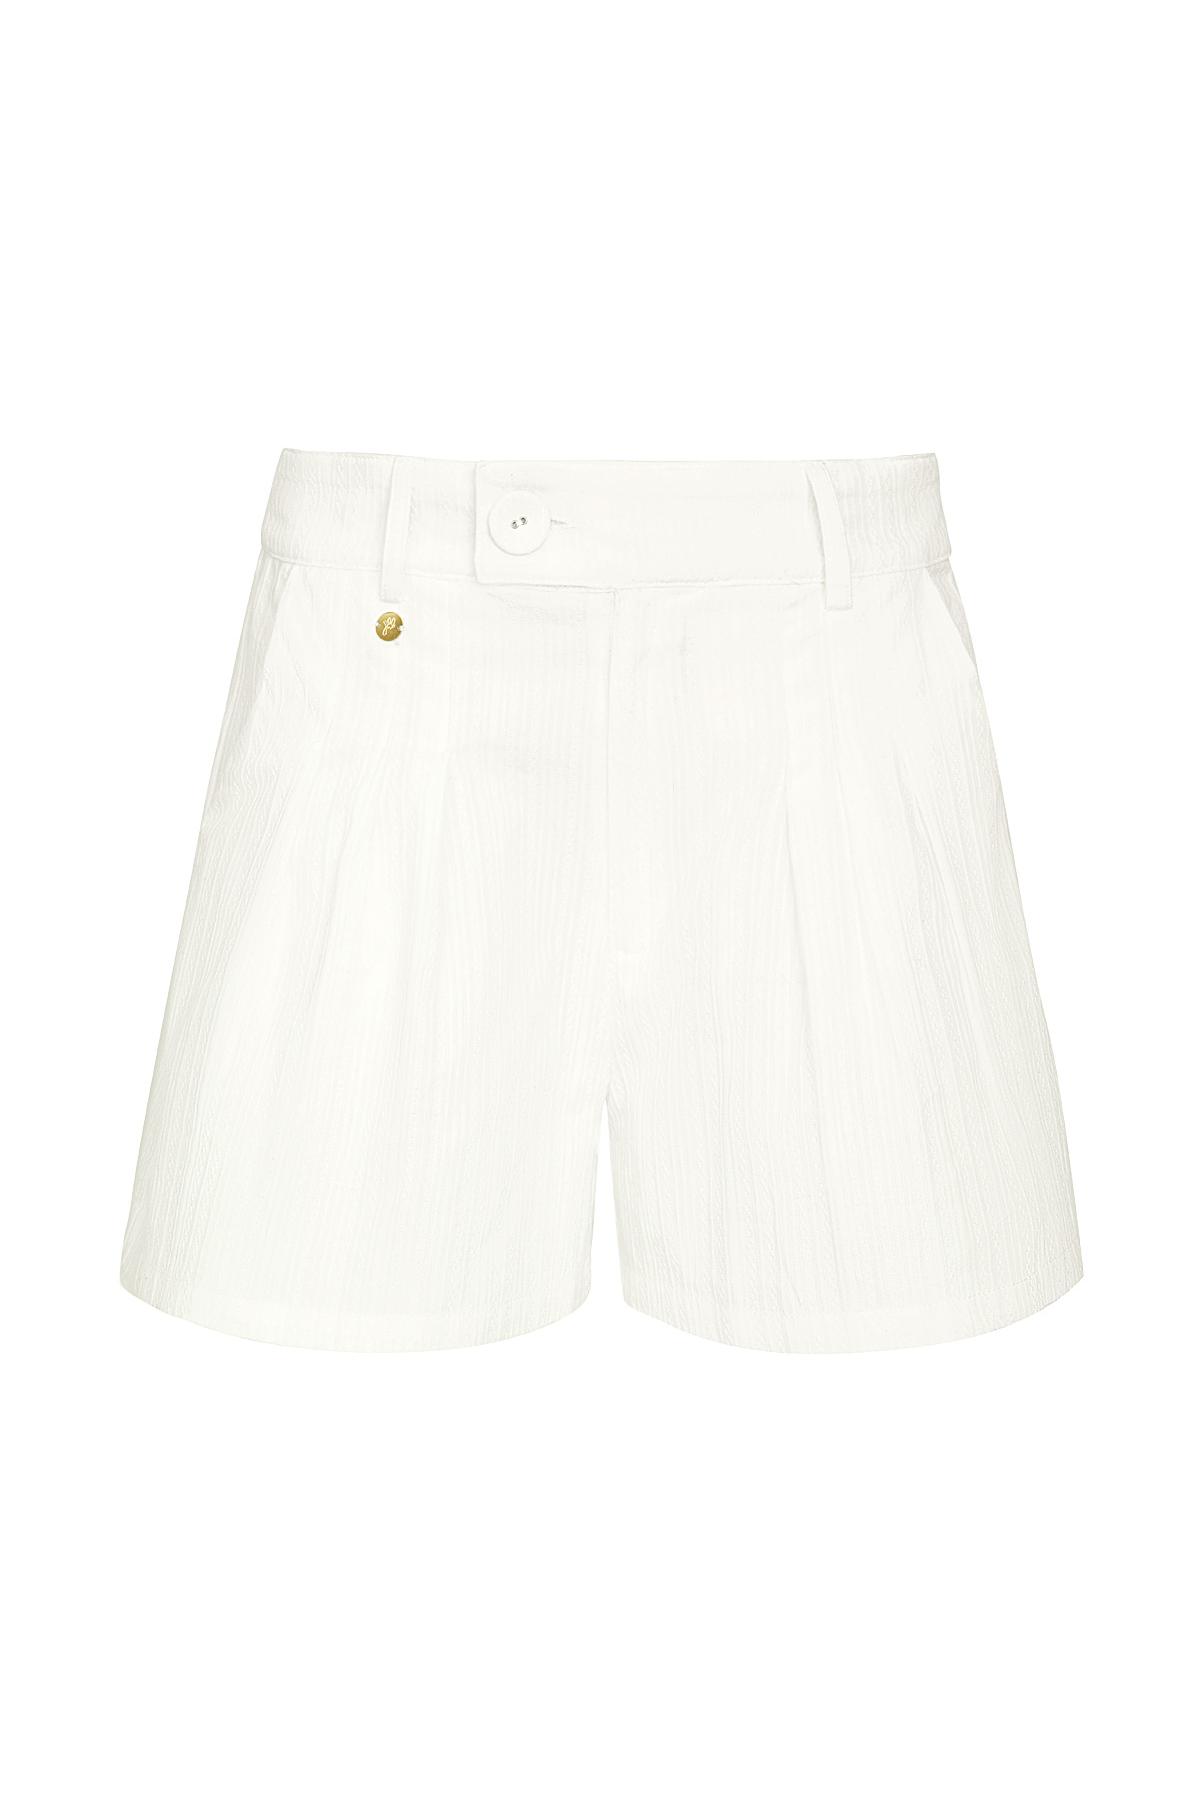 Shorts mit Knopfdetail - weiß S h5 